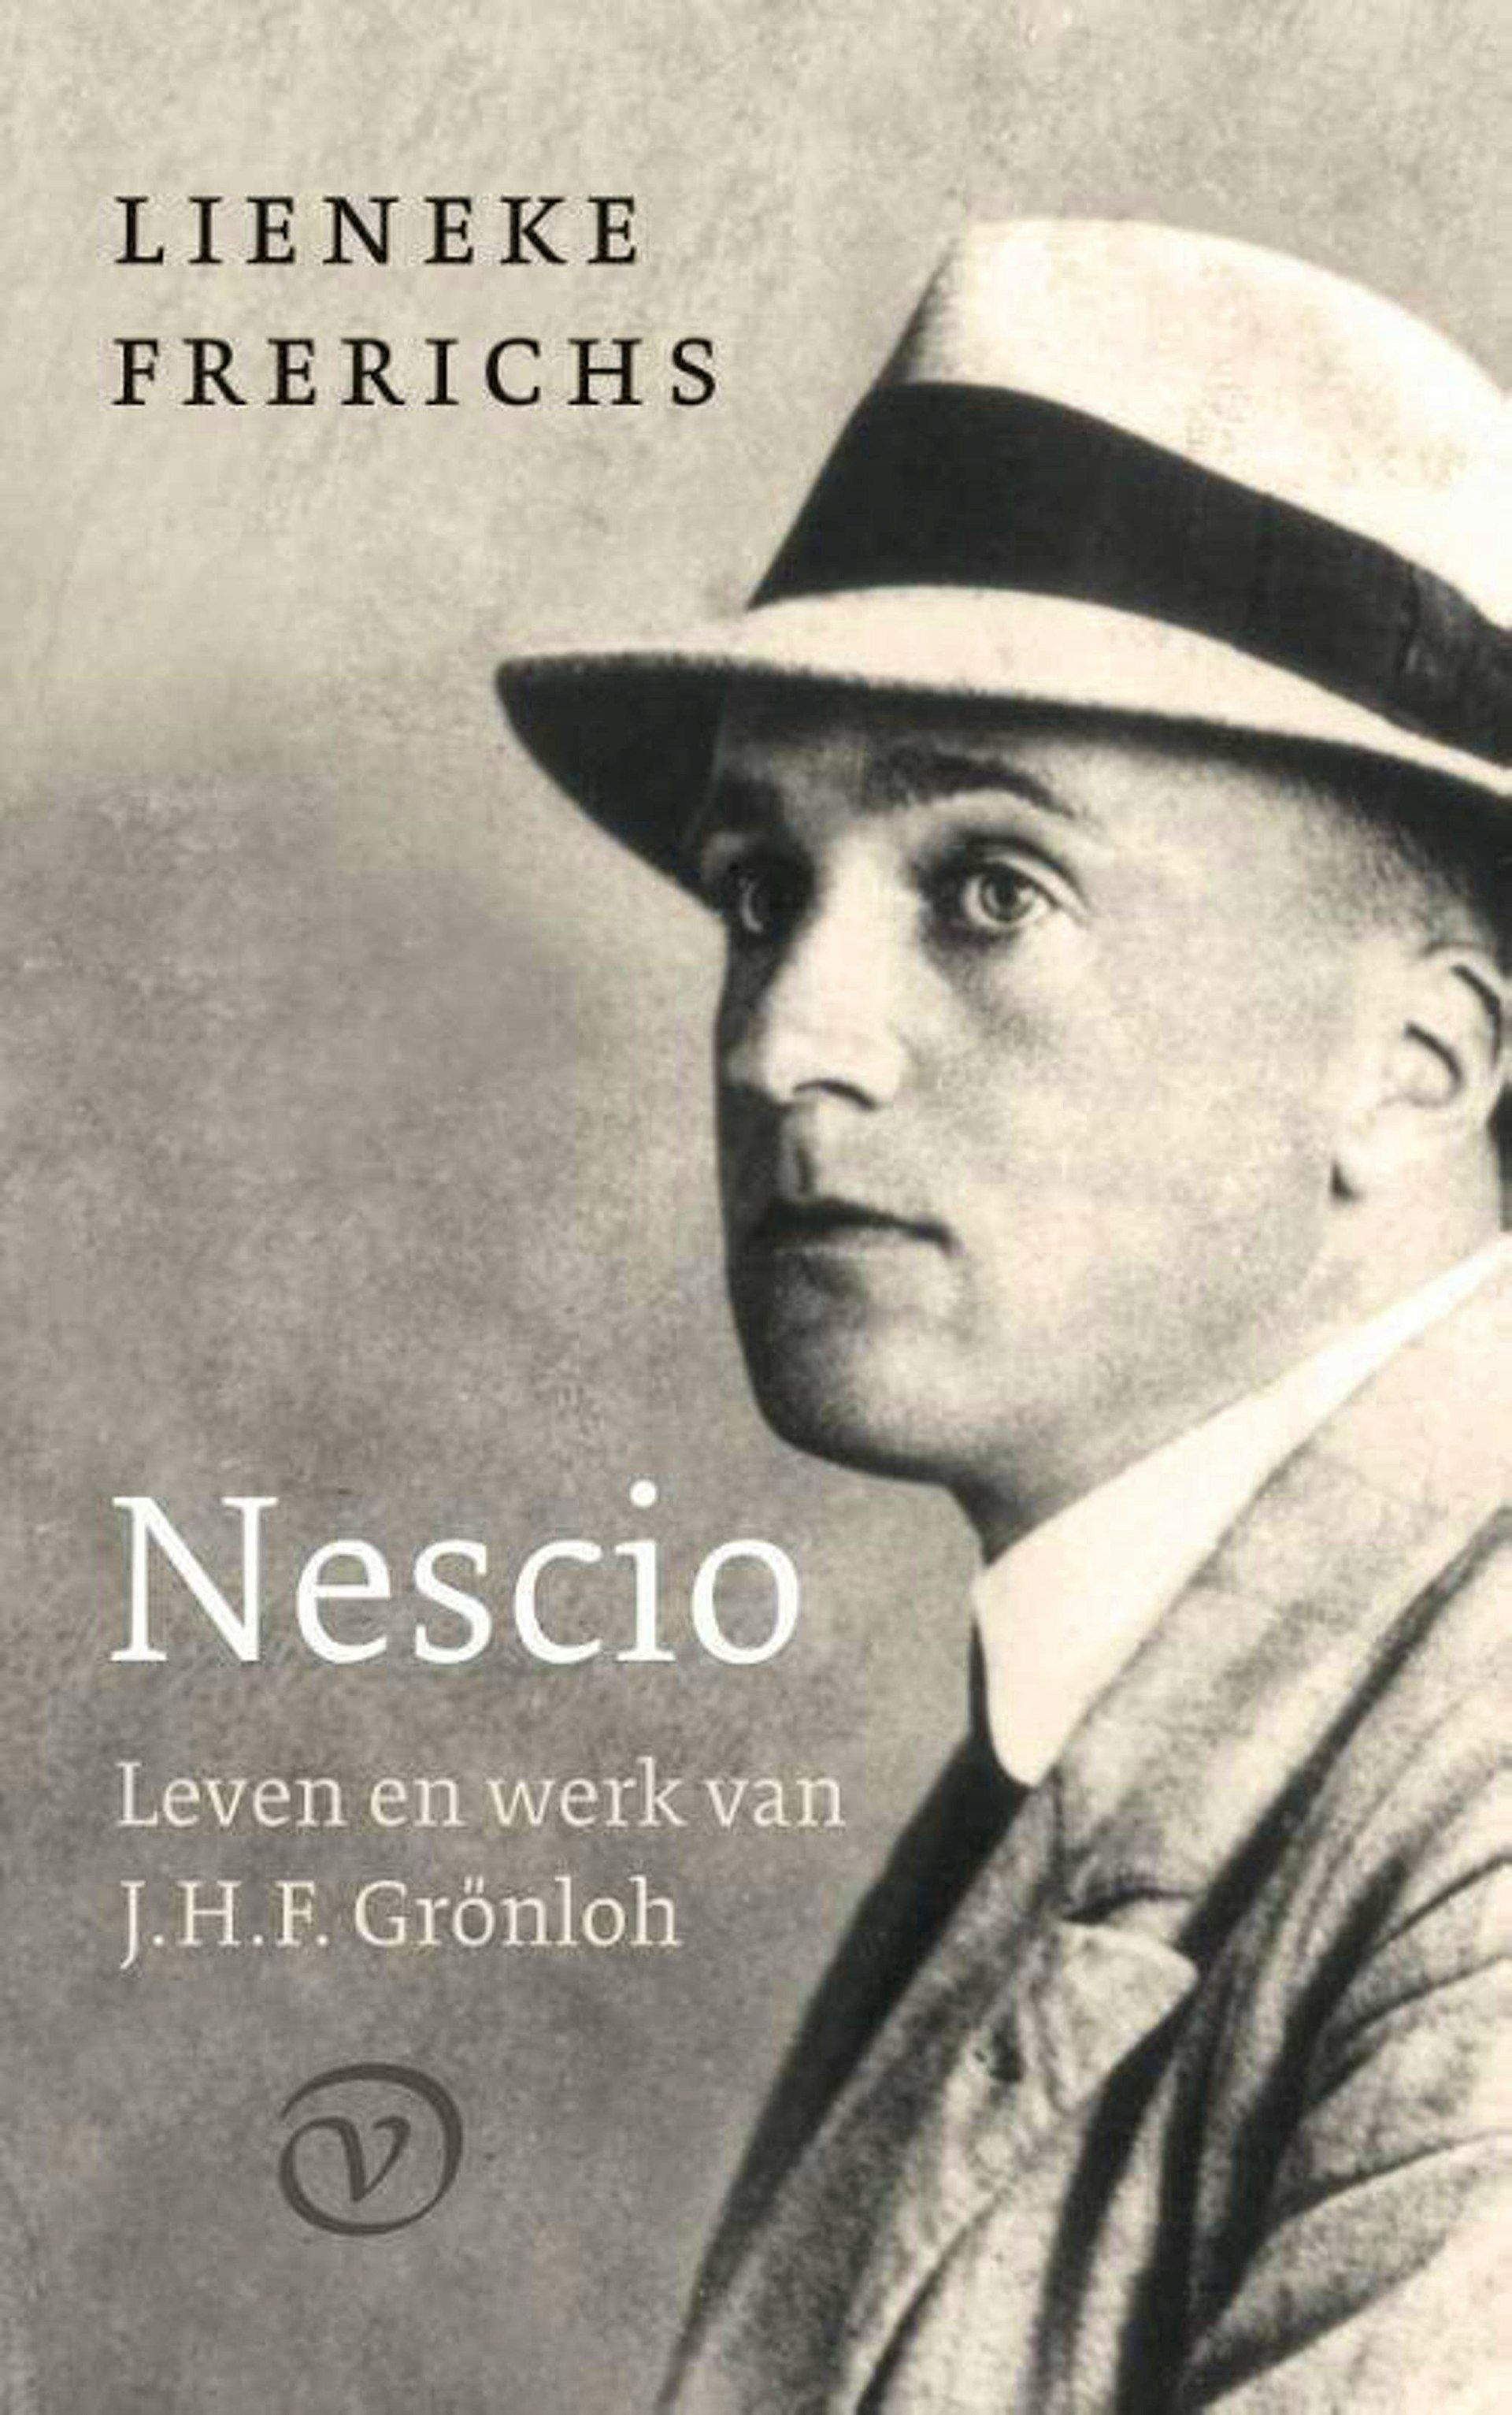 Biograaf Lieneke Frerichs over Nescio